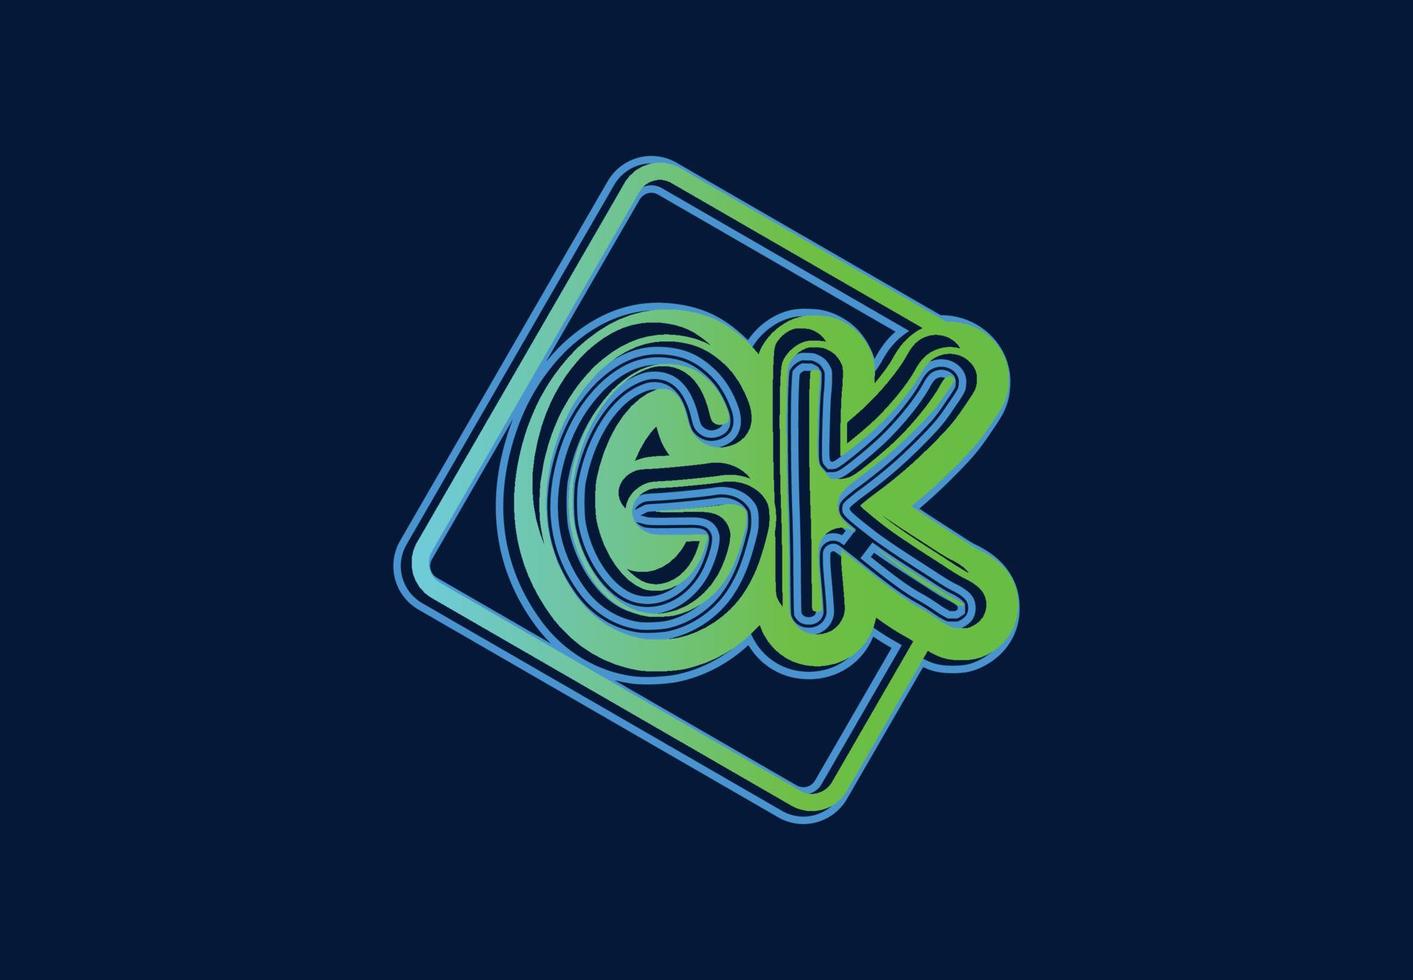 modèle de conception de logo et d'icône de lettre gk vecteur